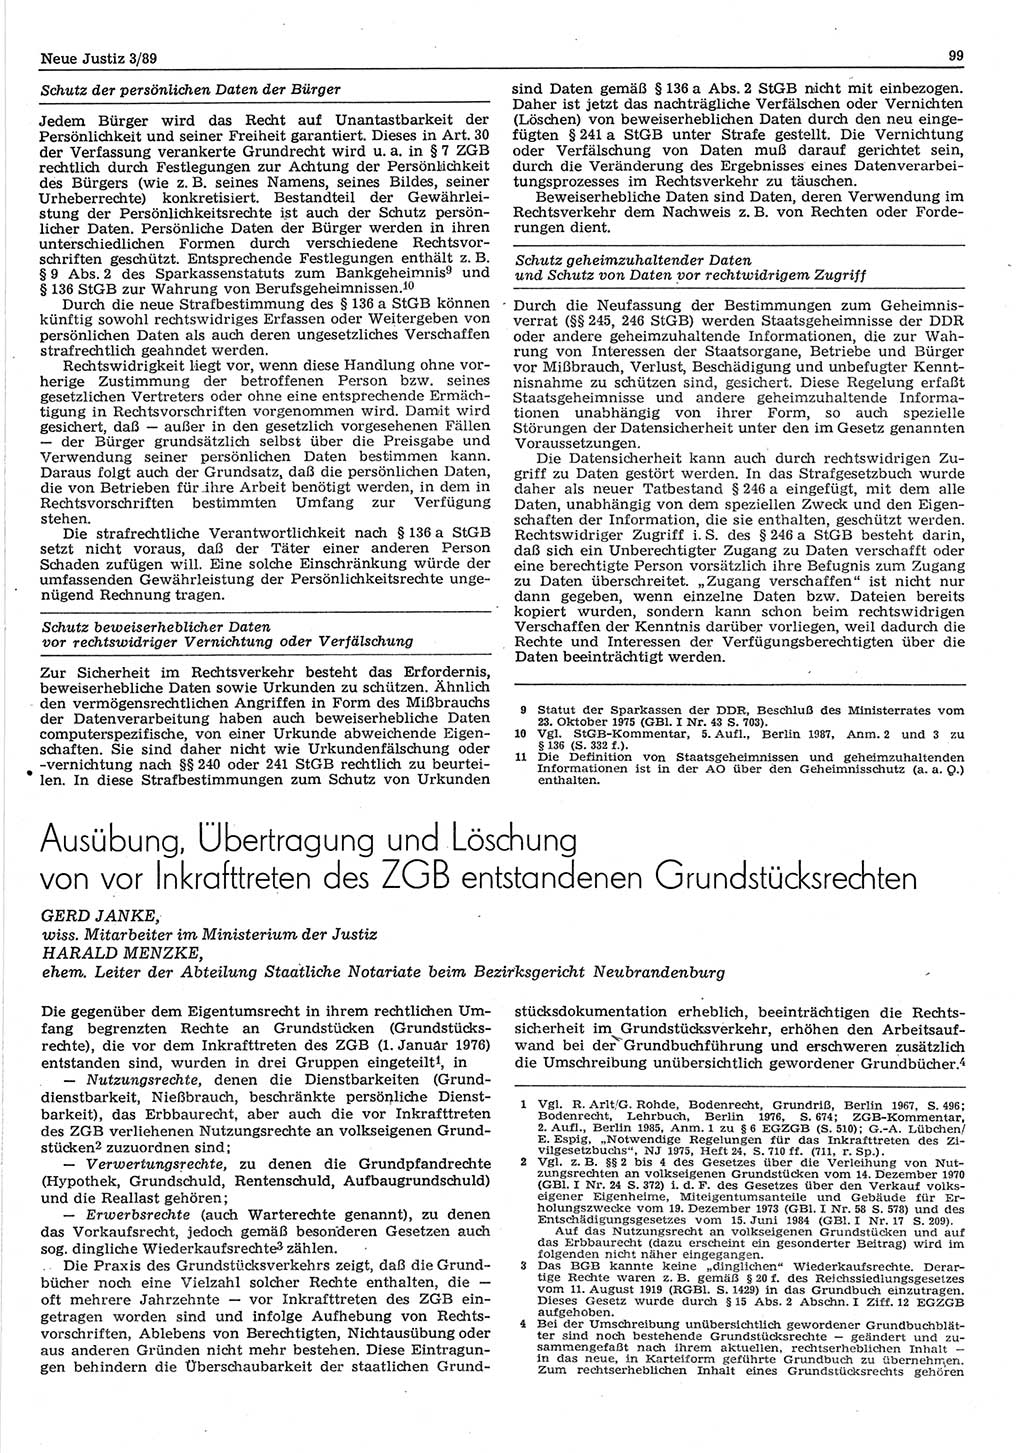 Neue Justiz (NJ), Zeitschrift für sozialistisches Recht und Gesetzlichkeit [Deutsche Demokratische Republik (DDR)], 43. Jahrgang 1989, Seite 99 (NJ DDR 1989, S. 99)